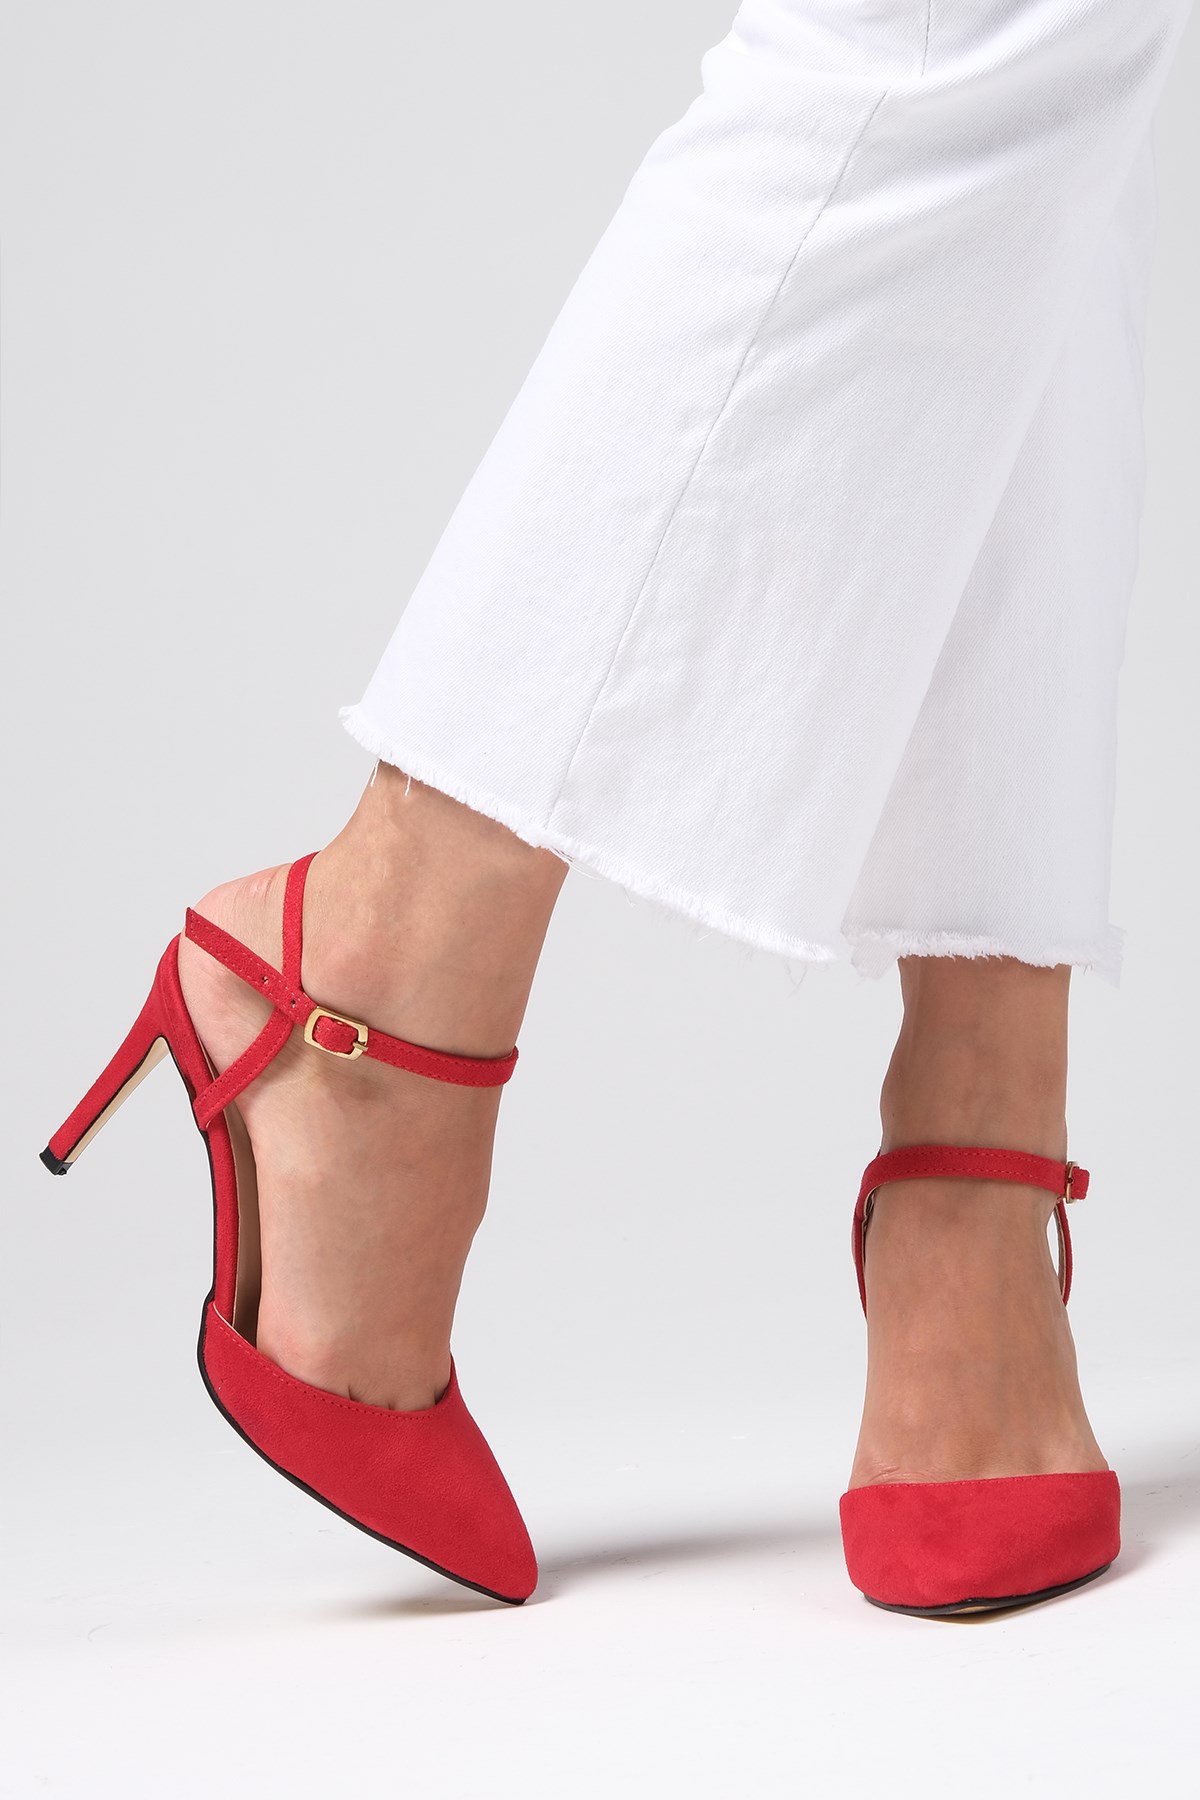 Mio Gusto Kırmızı Renk Süet Bilek Bantlı Topuklu Ayakkabı